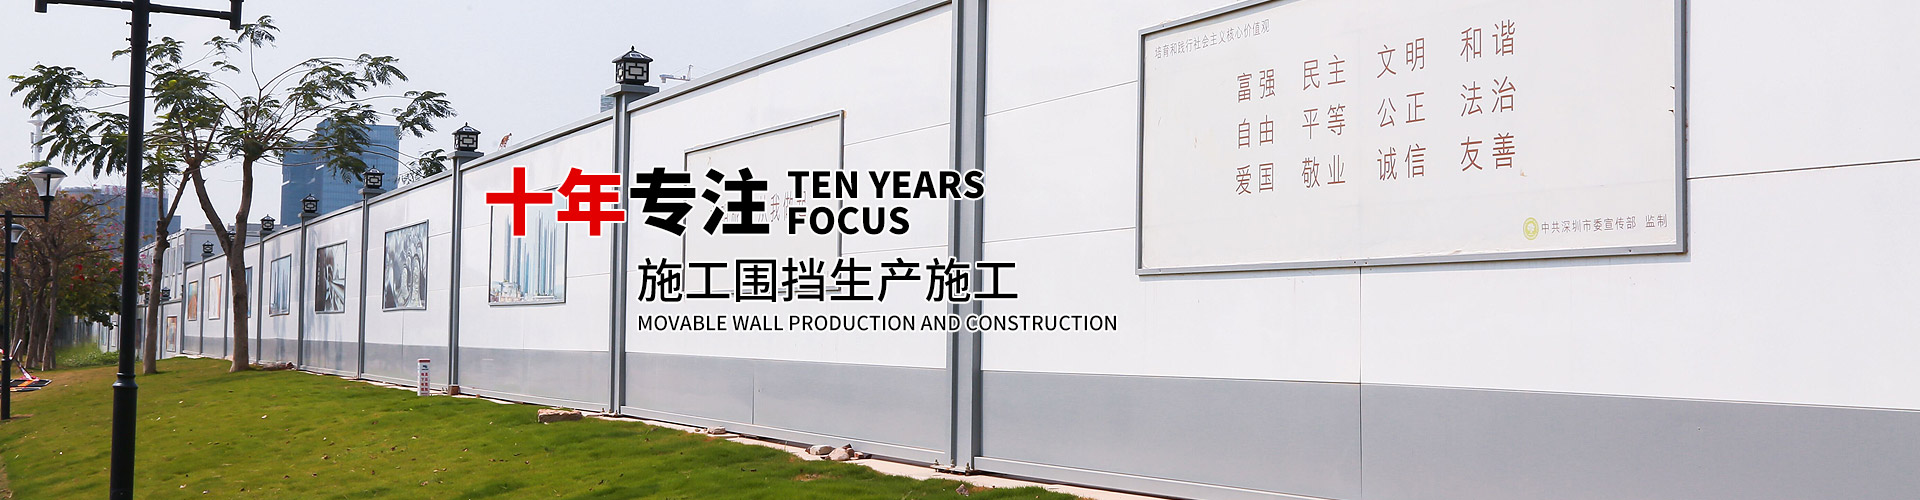 十年专注活动围墙生产施工